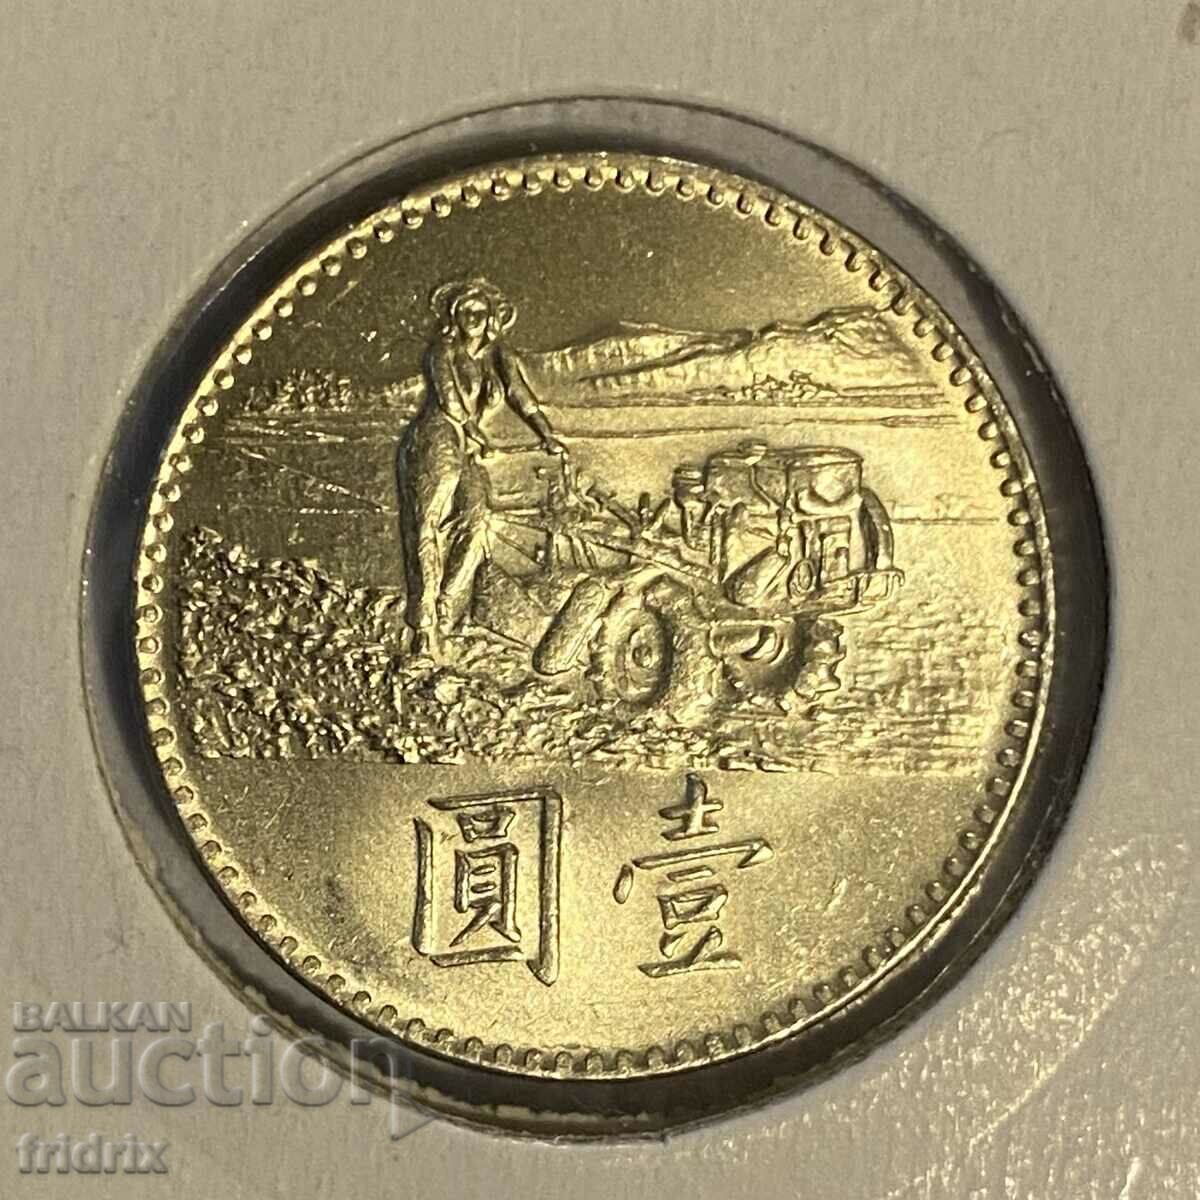 Taiwan 1 yuan dollar FAO / Taiwan 1 dollar 1969 FAO